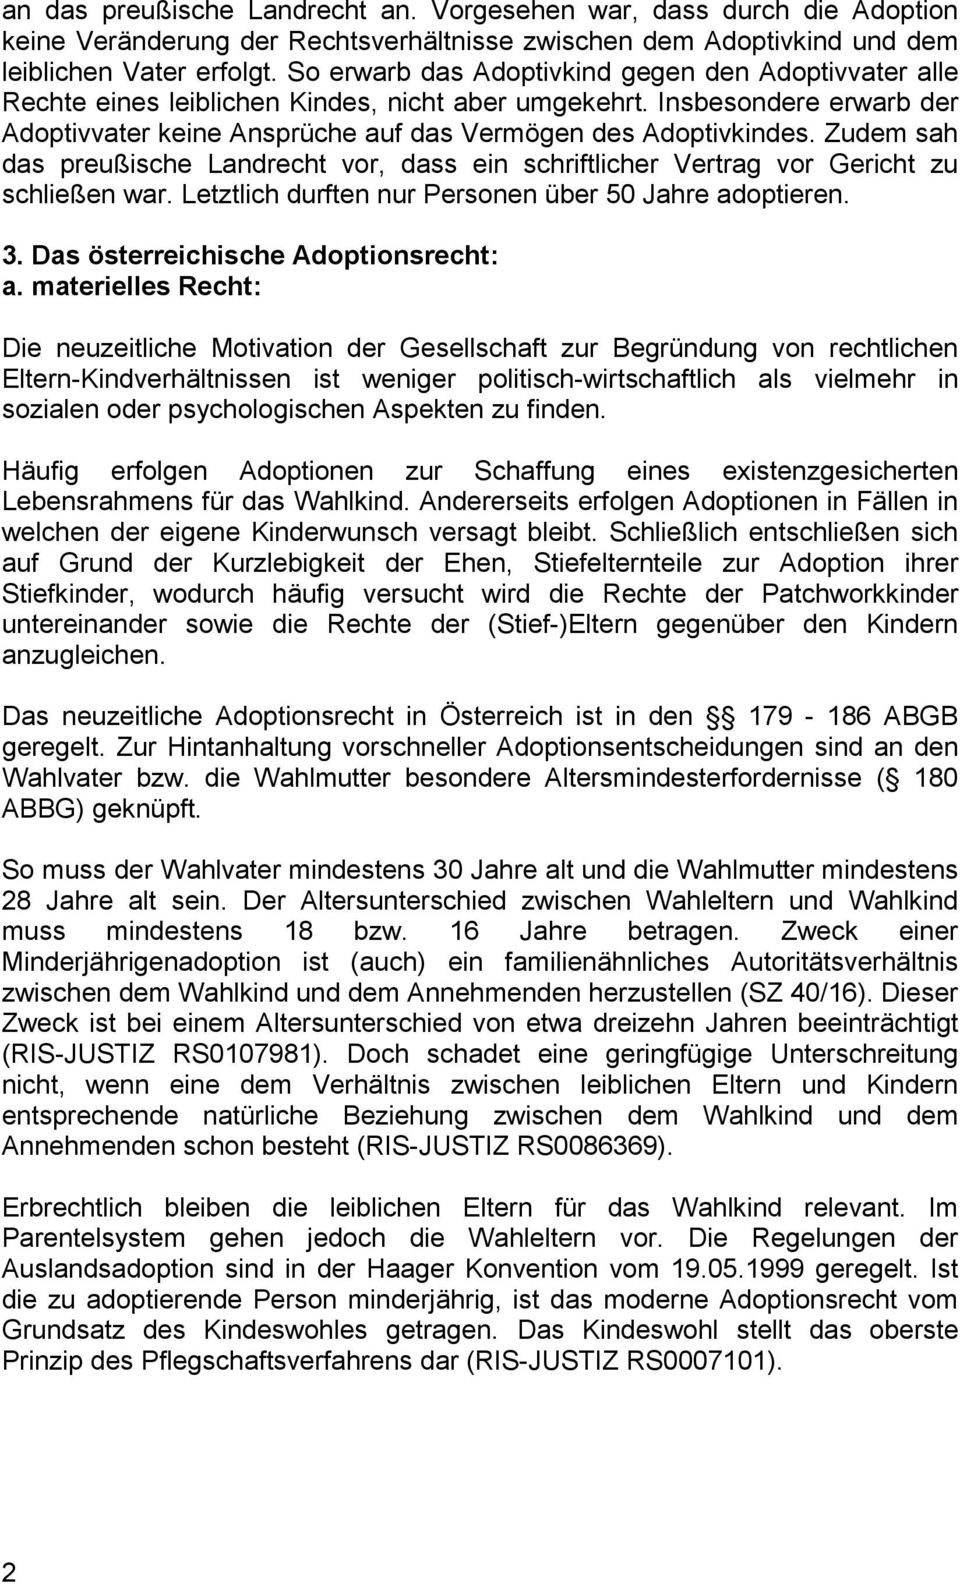 Zudem sah das preußische Landrecht vor, dass ein schriftlicher Vertrag vor Gericht zu schließen war. Letztlich durften nur Personen über 50 Jahre adoptieren. 3. Das österreichische Adoptionsrecht: a.